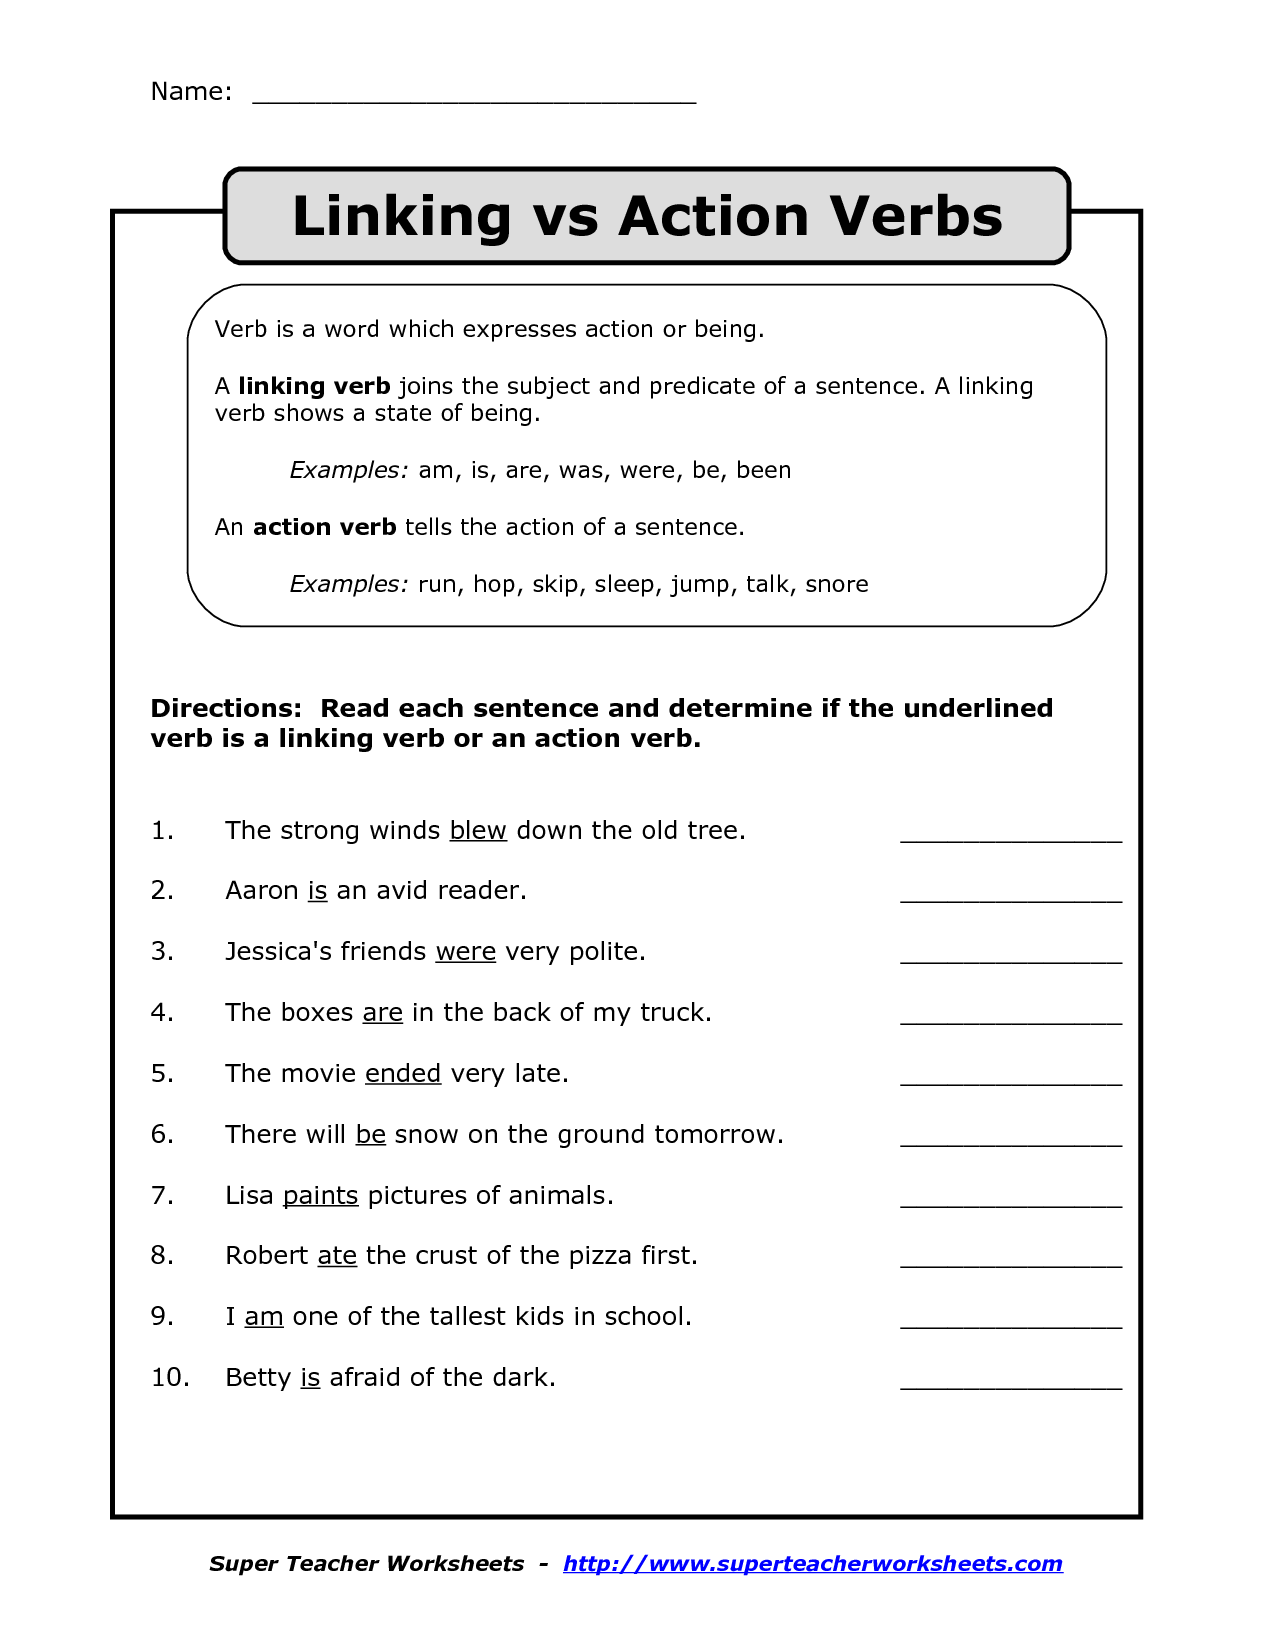 fun-with-helping-verbs-worksheet-helping-verbs-helping-verbs-worksheet-verb-worksheets